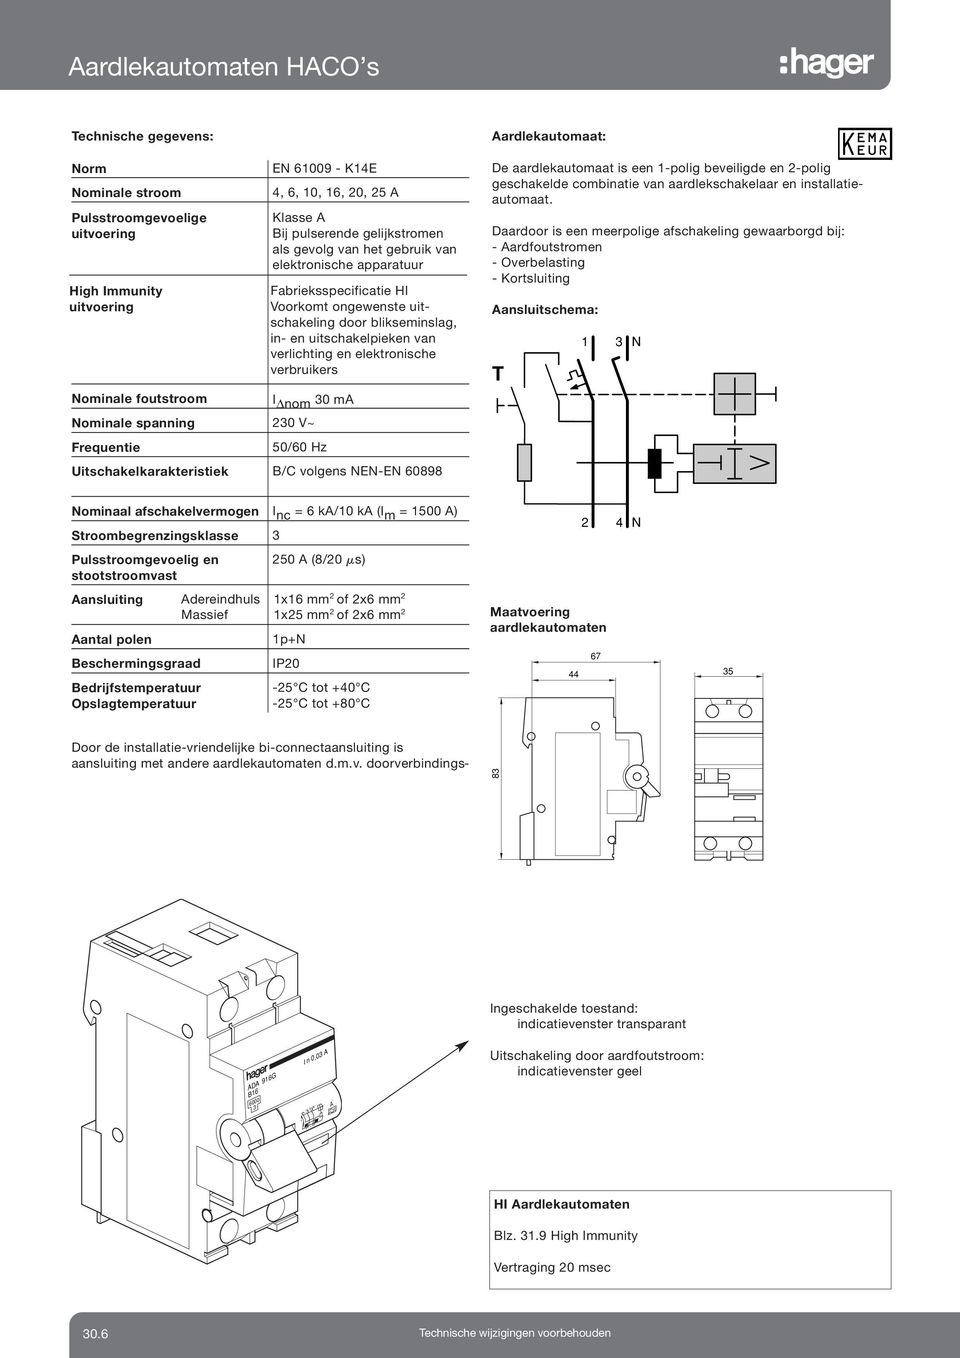 uitschakelpieken van verlichting en elektronische verbruikers 50/60 Hz Uitschakelkarakteristiek B/C volgens NENEN 60898 Aardlekautomaat: De aardlekautomaat is een 1polig beveiligde en 2polig